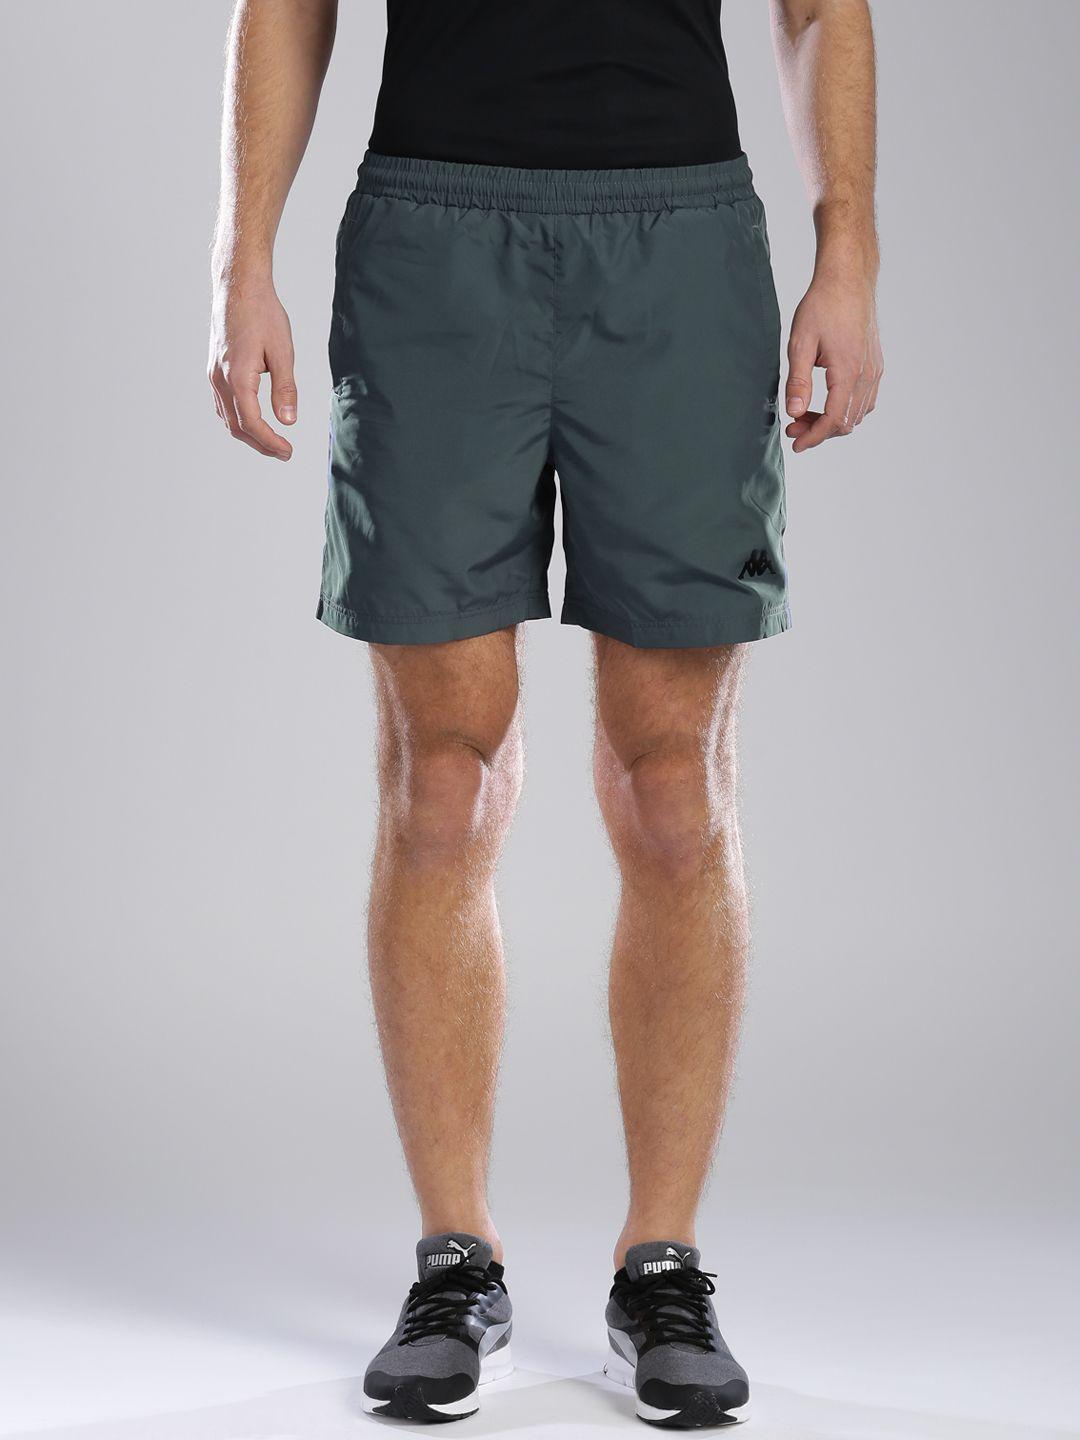 kappa men grey shorts